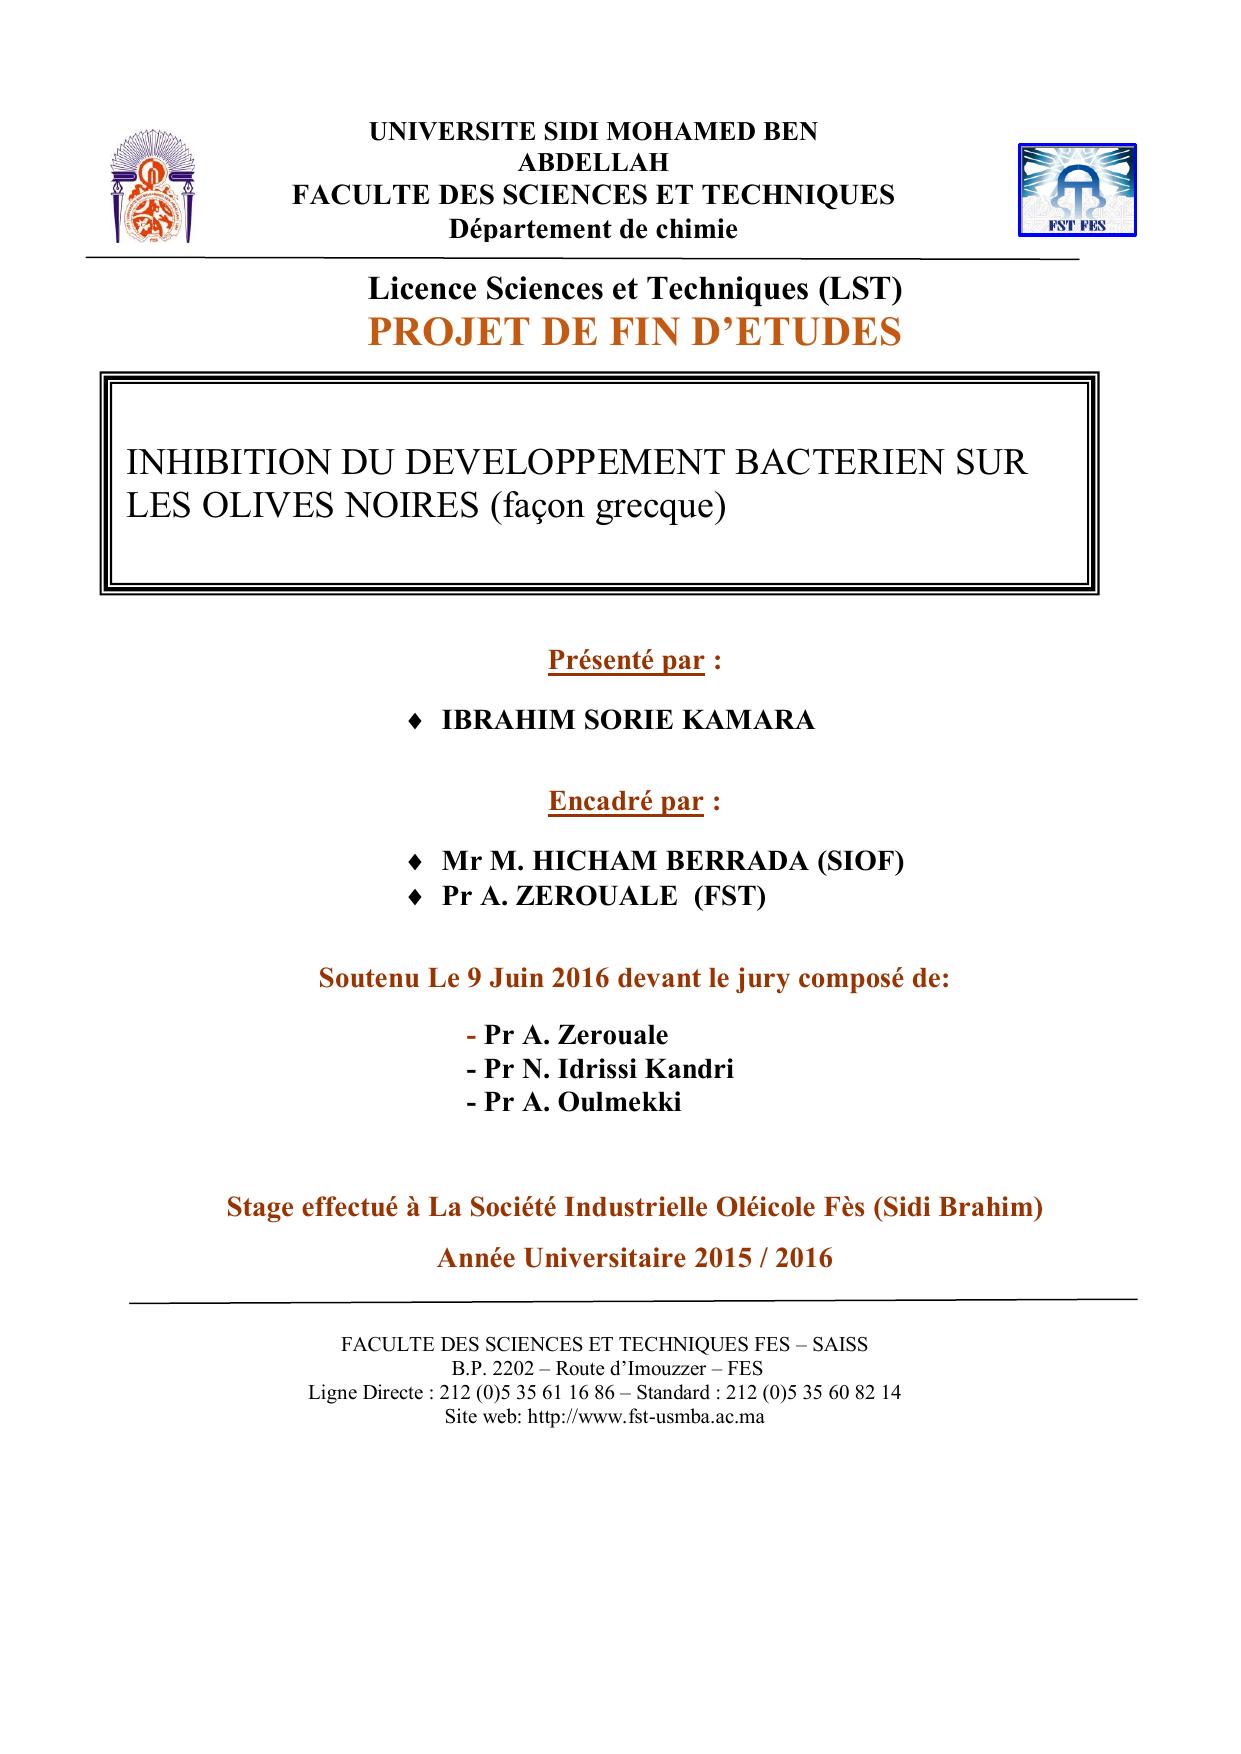 Inhibition du développement bactérien sur les olives noires (Façon greque)